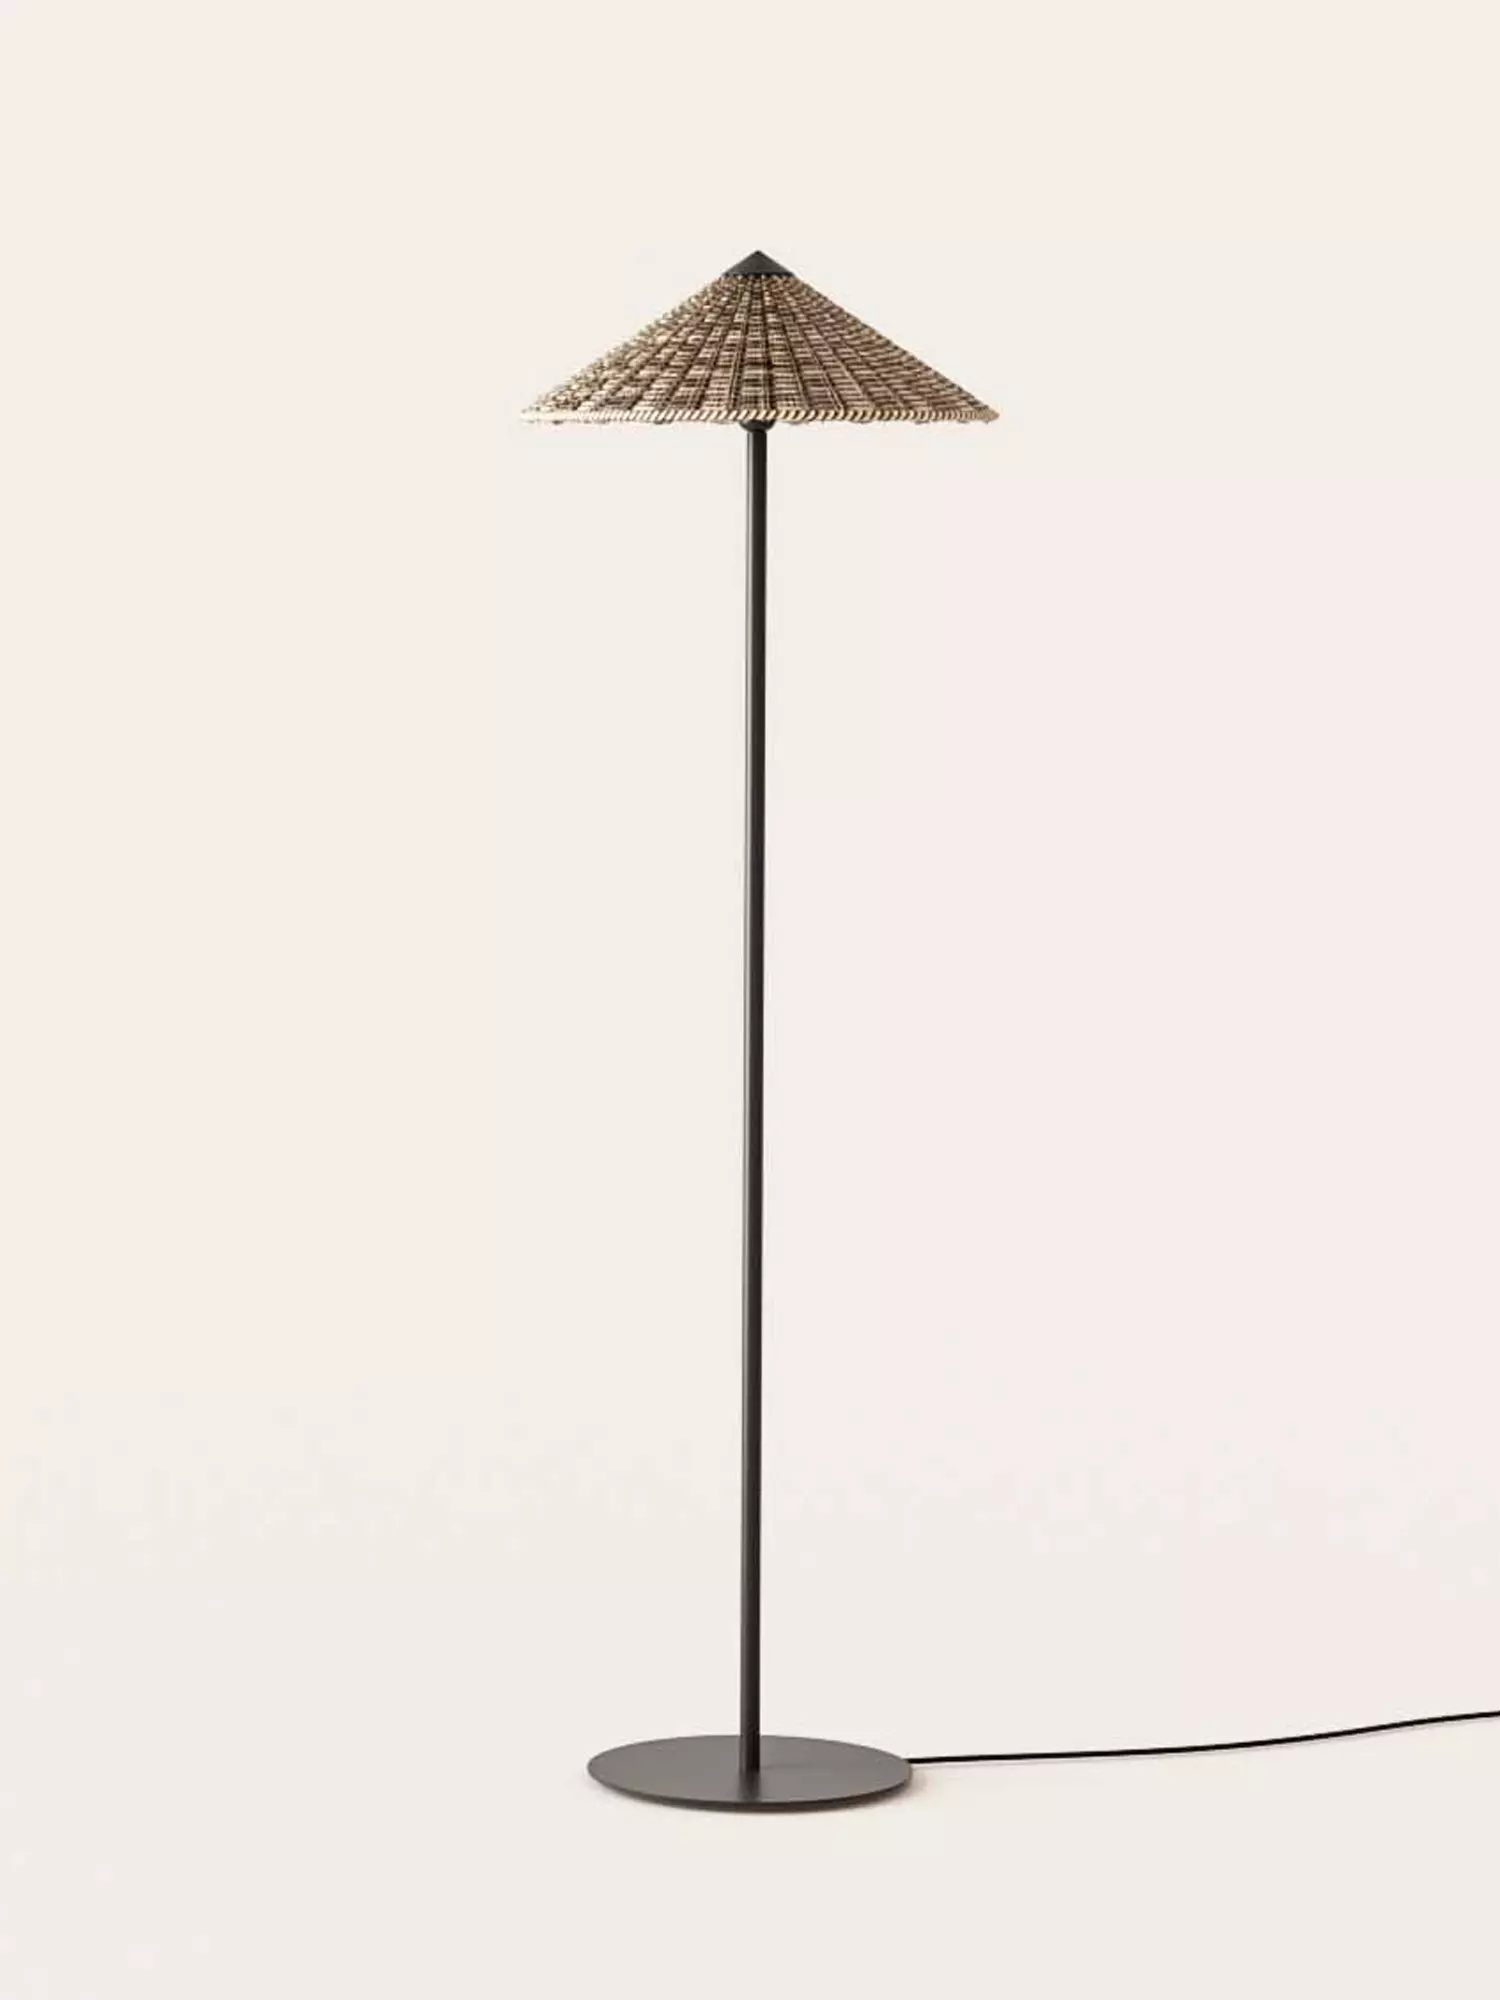 | Floor | LIGHTING showroom Furniture brands Warsaw 9design, store Lamps of best